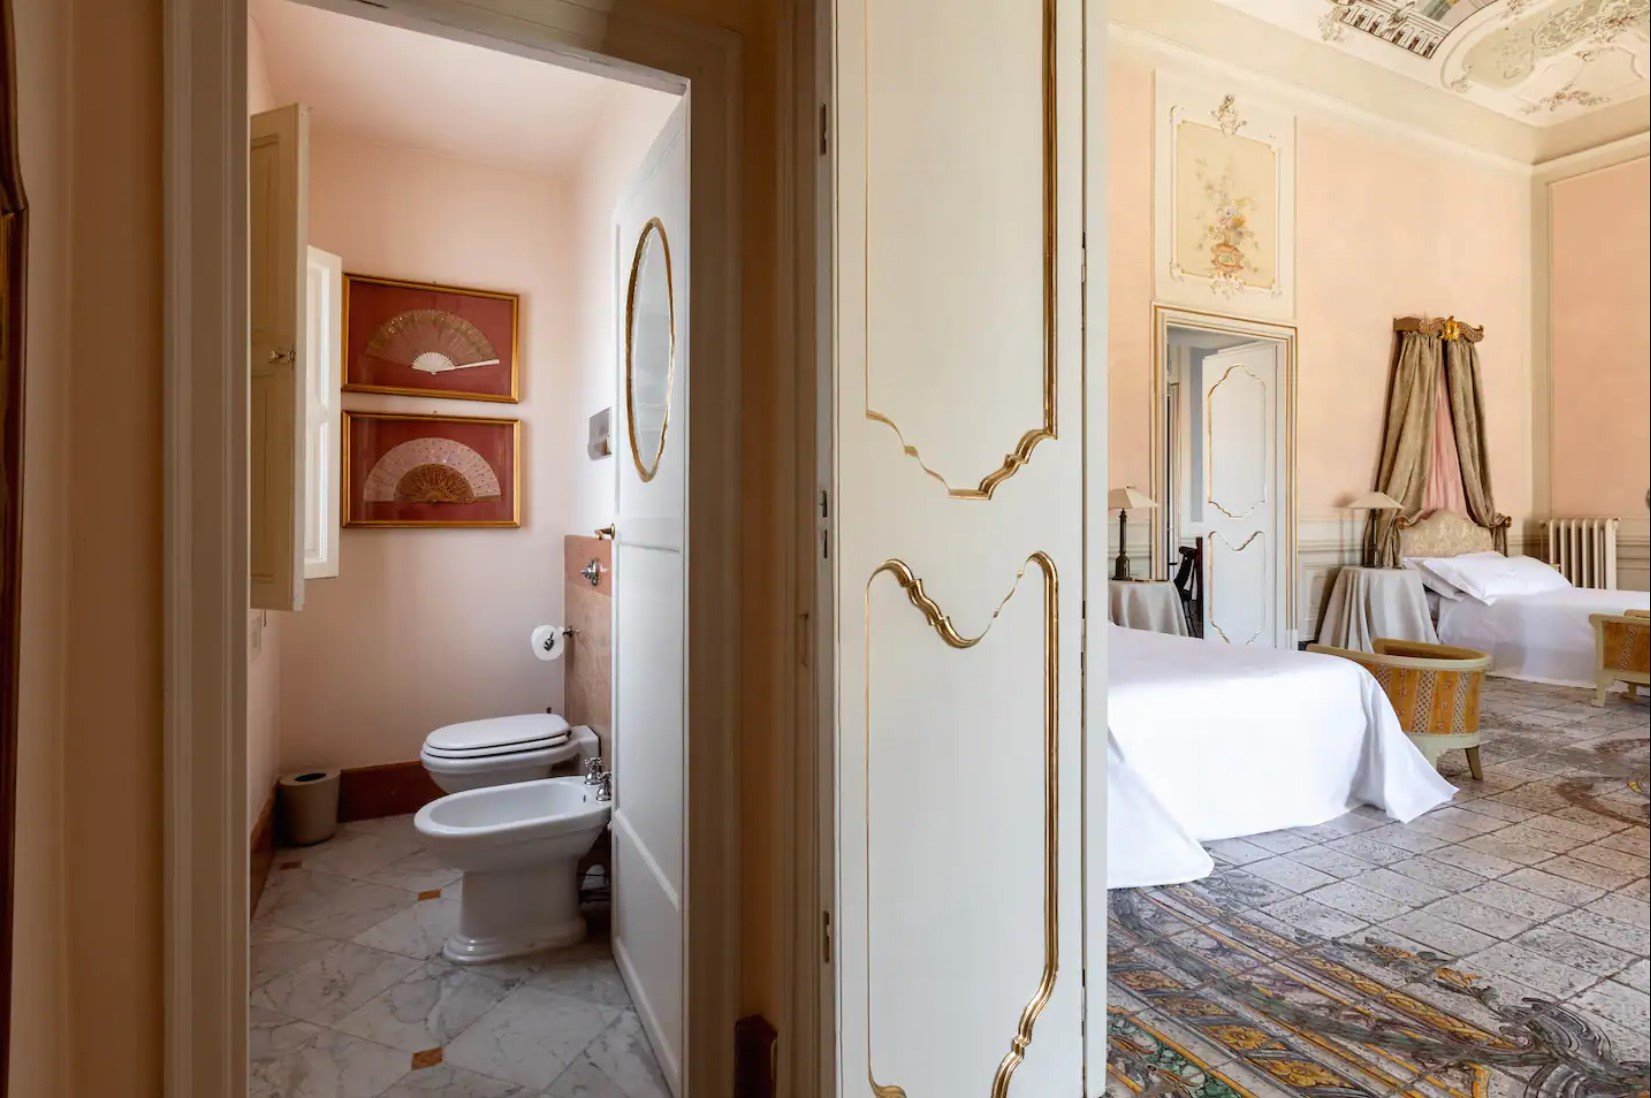 villa tasca toilet and bidet next to bedroom.jpg